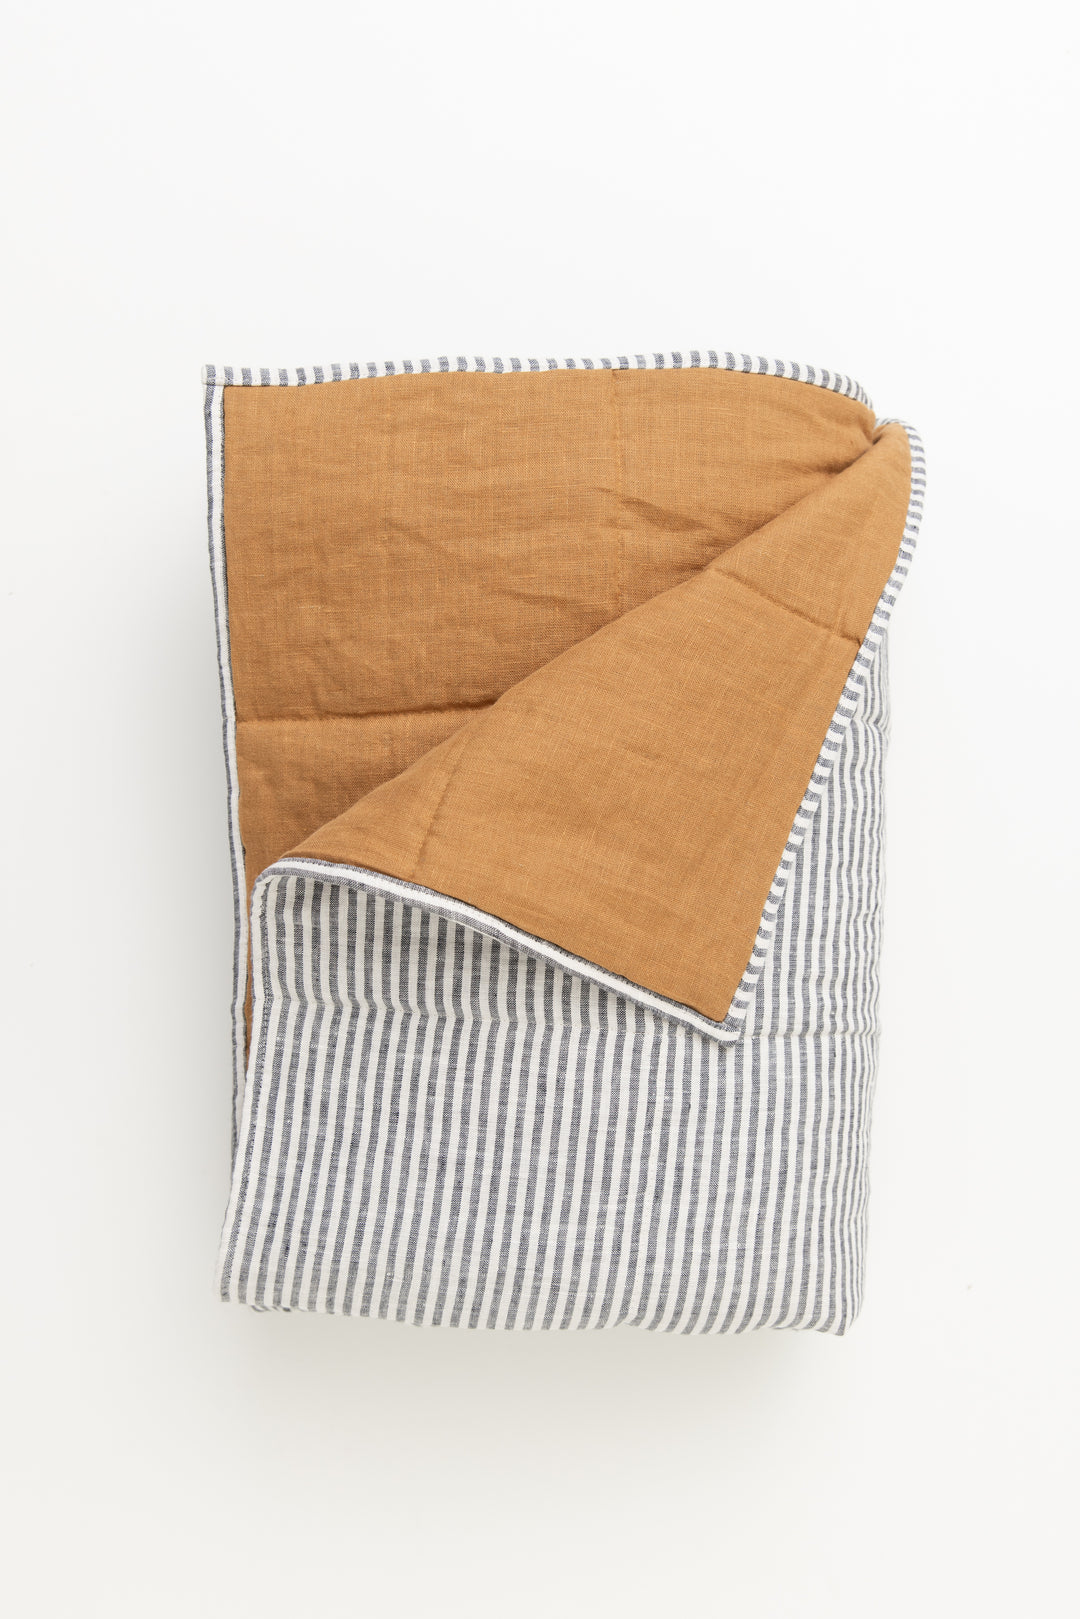 King size Linen Quilted Blanket #color_burnt-orange-stripe